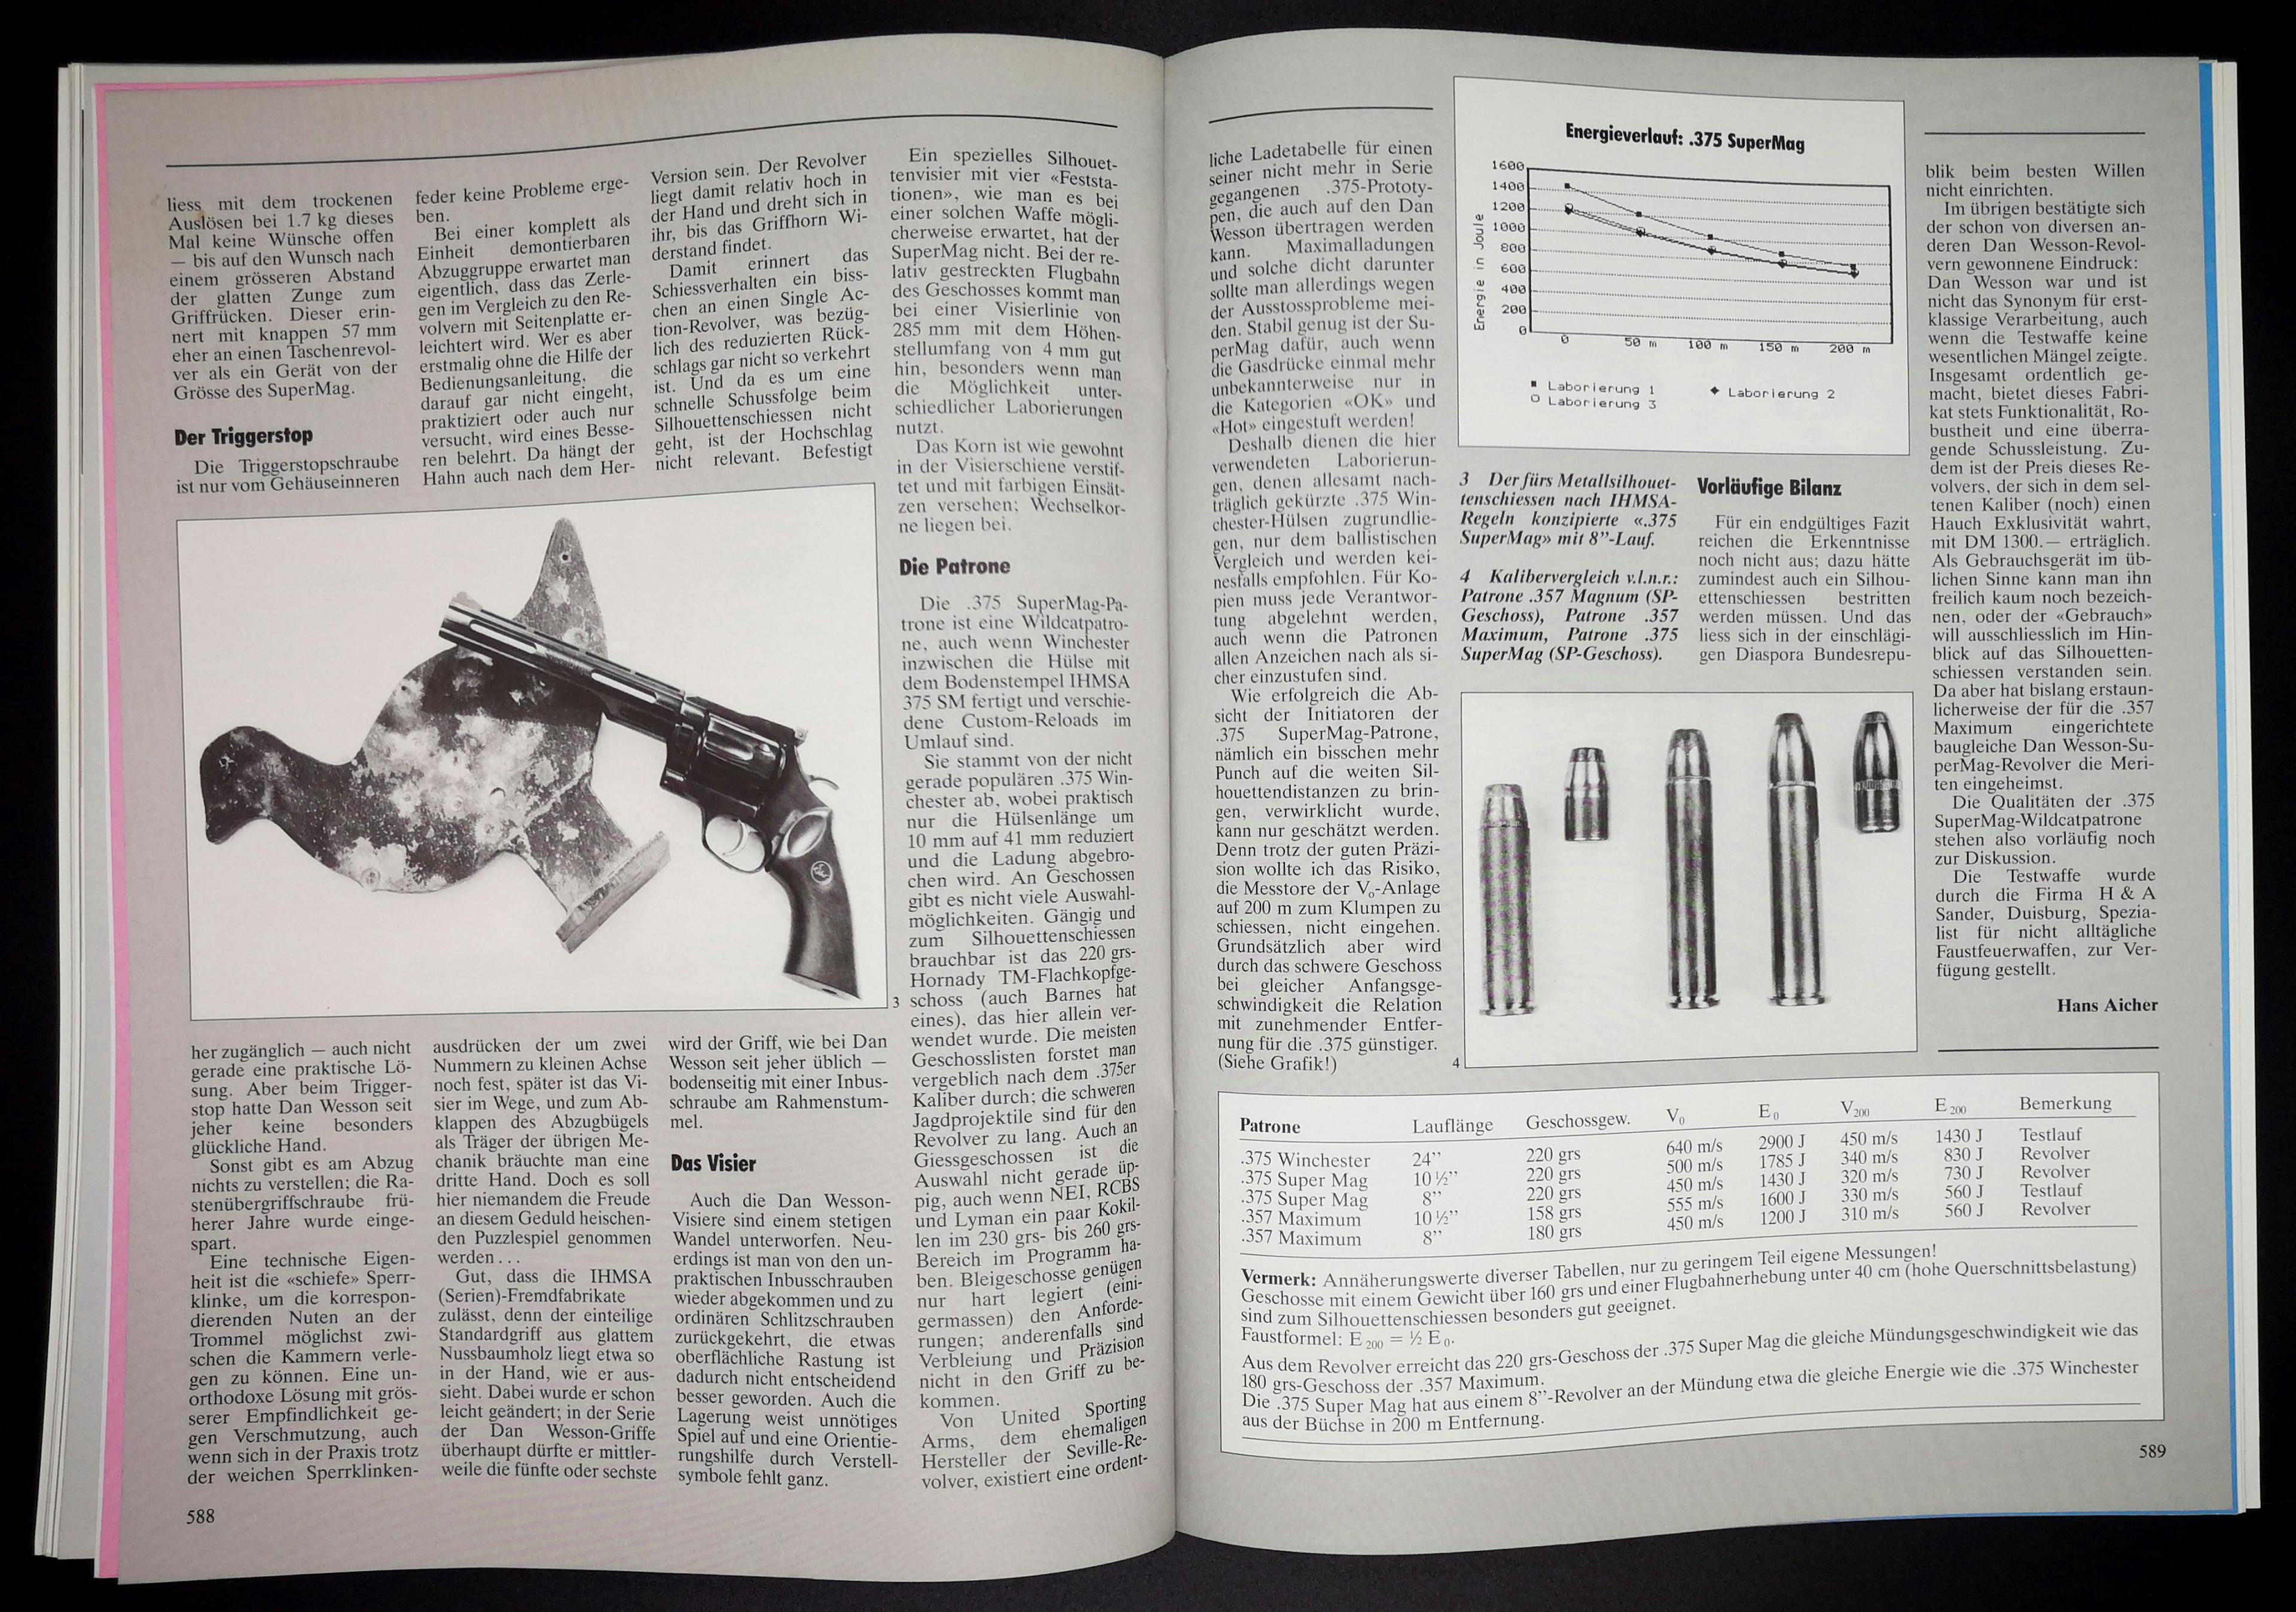 Heute nicht mehr so geläufig: .357 Super Magnum, eine für das Silhouettenschiessen erdachte Wildcat Patrone.
